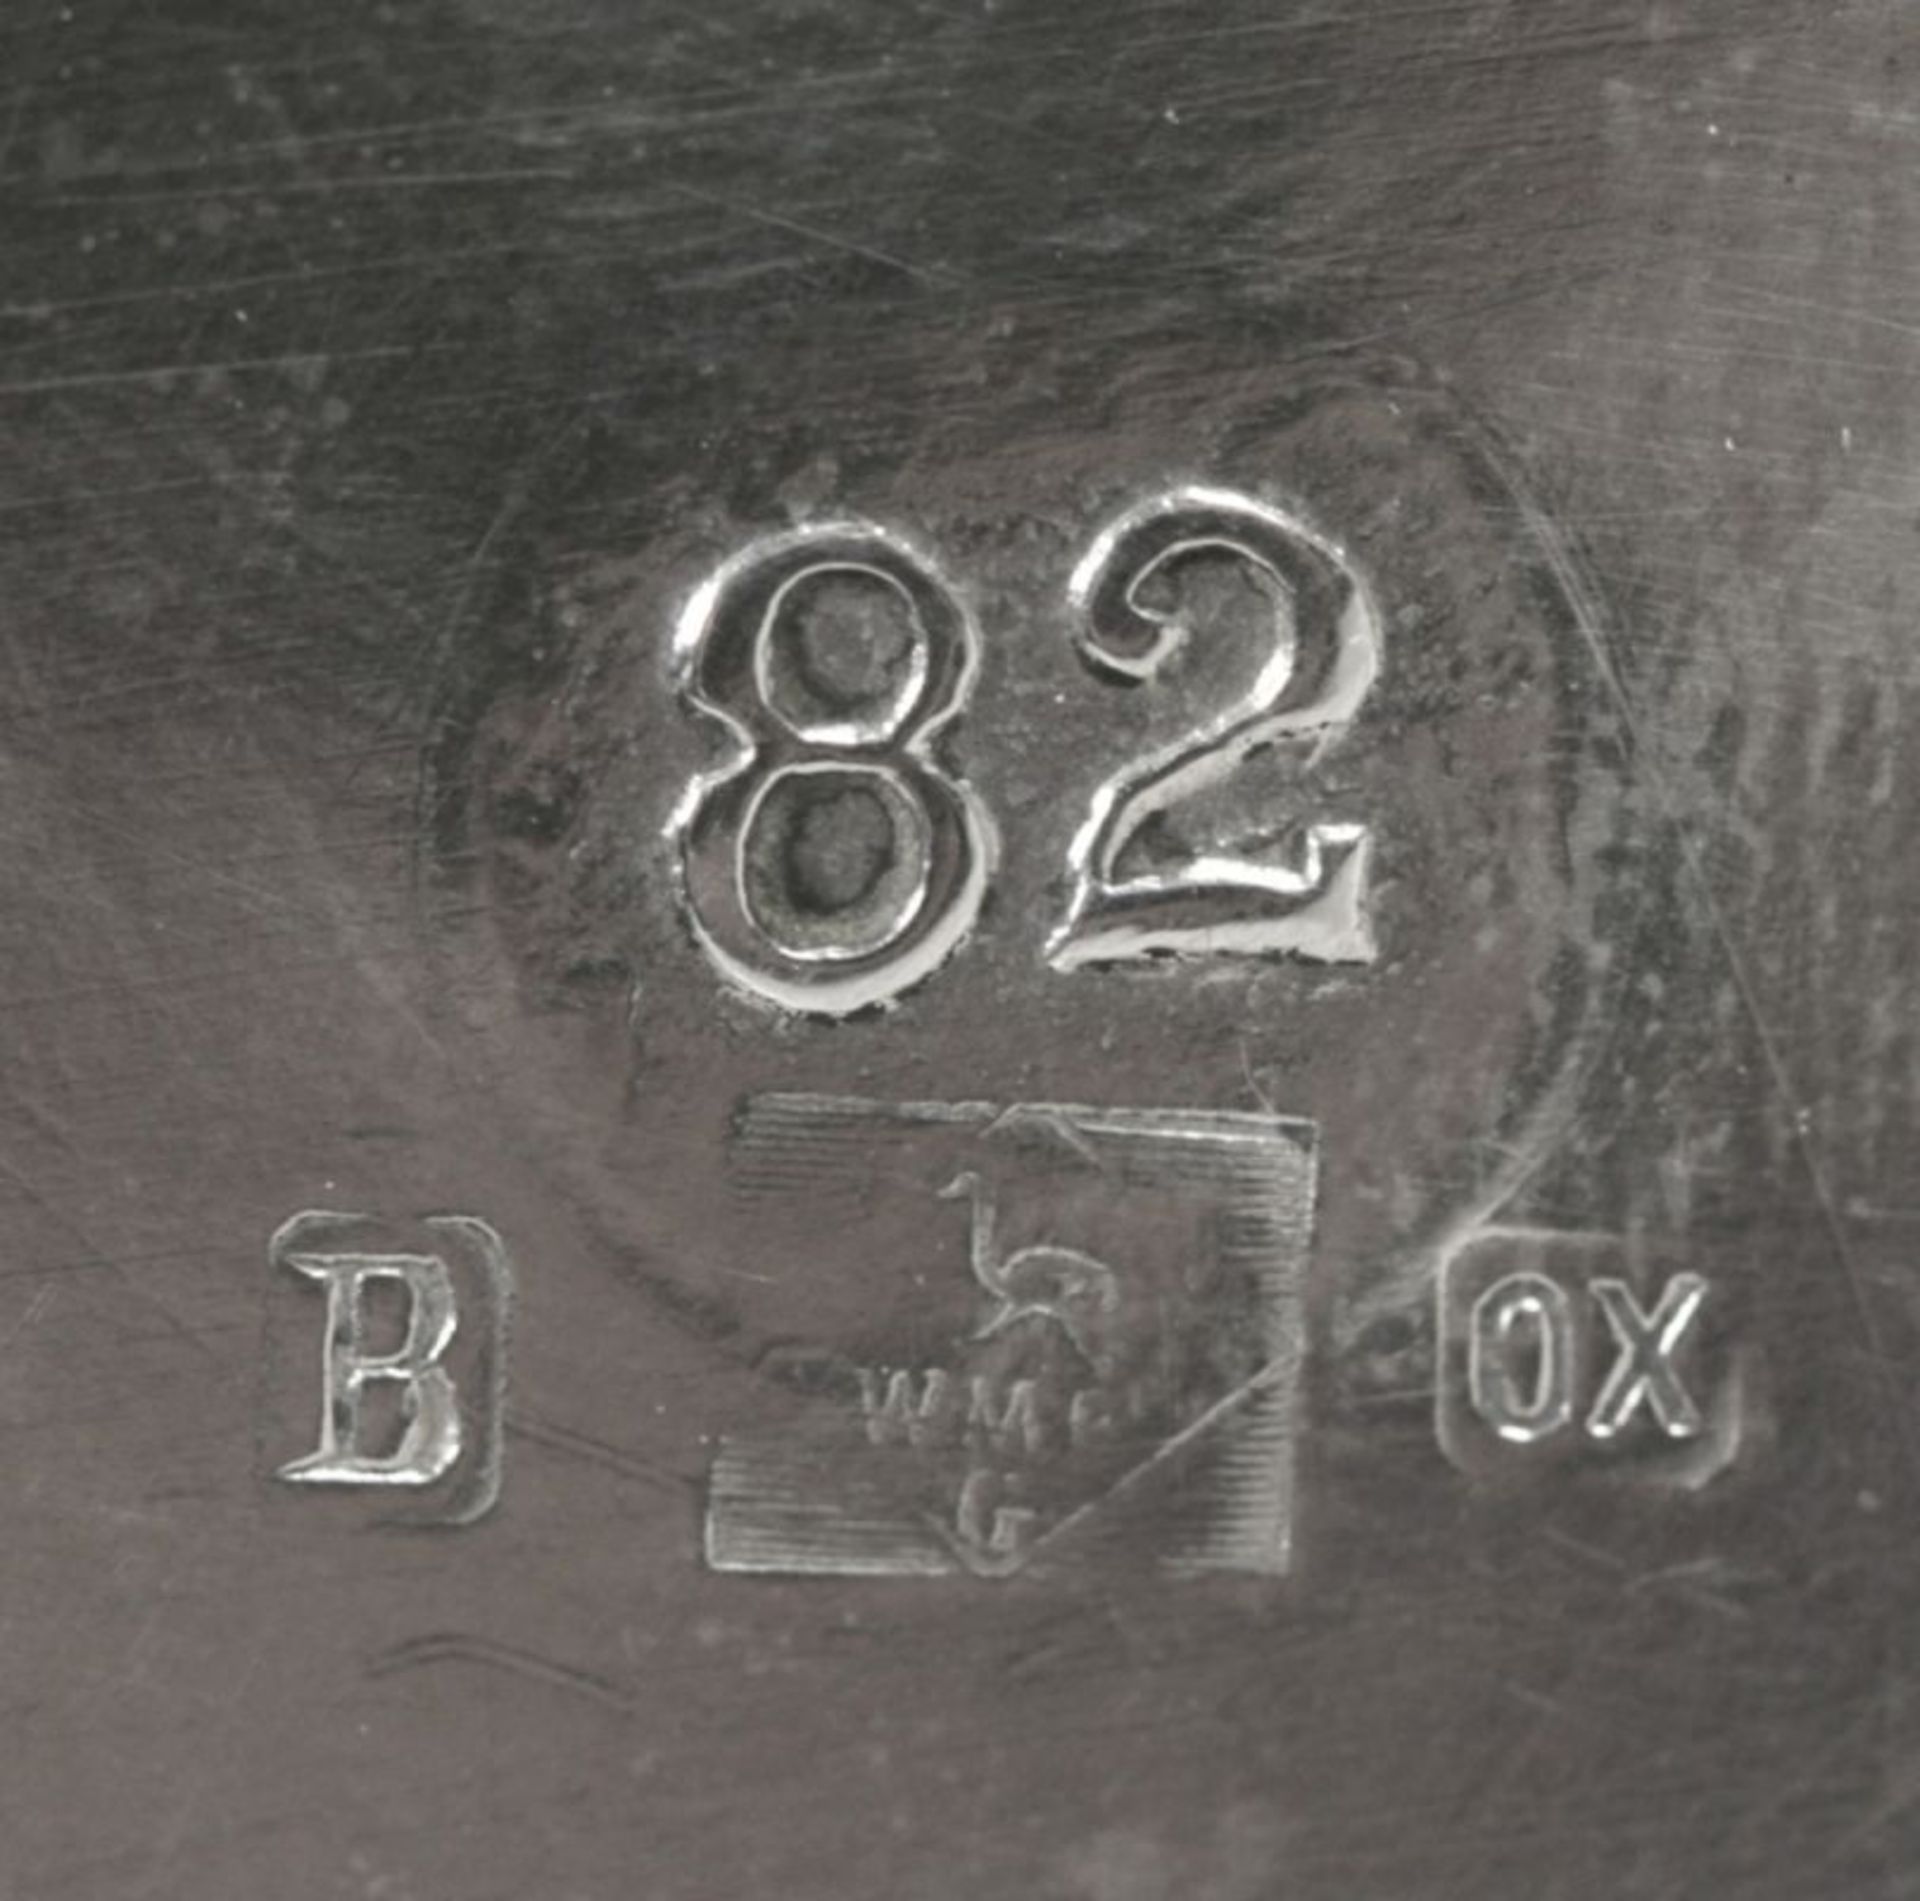 Britanniametall-Weinflaschenhalter, WMF, Geislingen, um 1900, Mod.nr.: 82, über 3 dezent< - Bild 2 aus 2